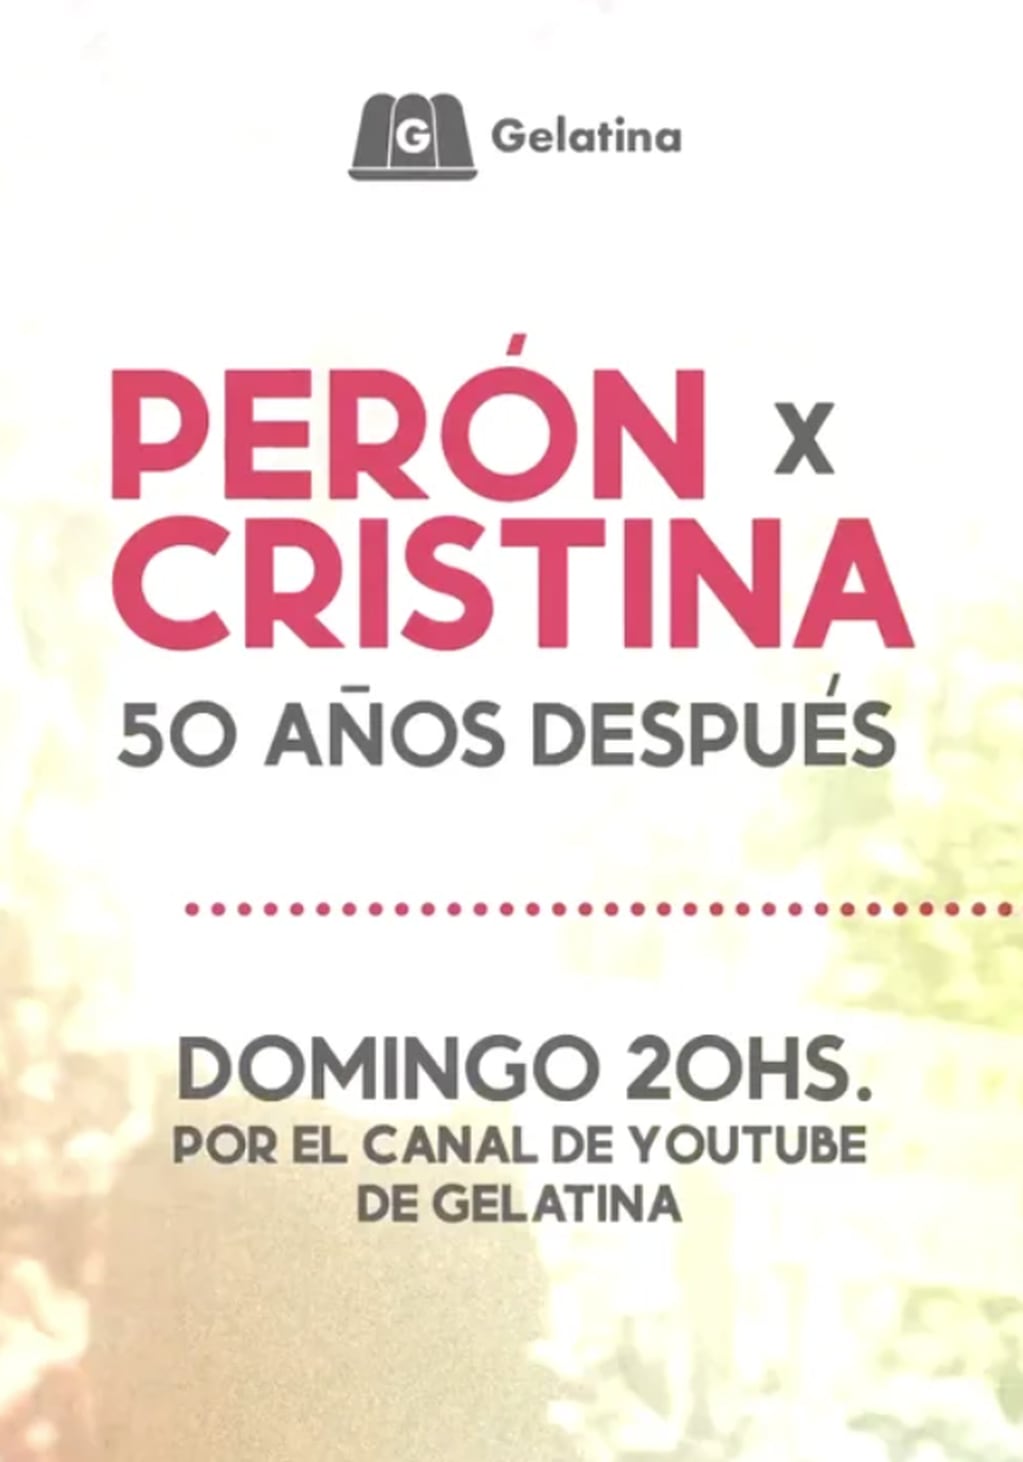 Cristina reaparecerá en un canal de streaming